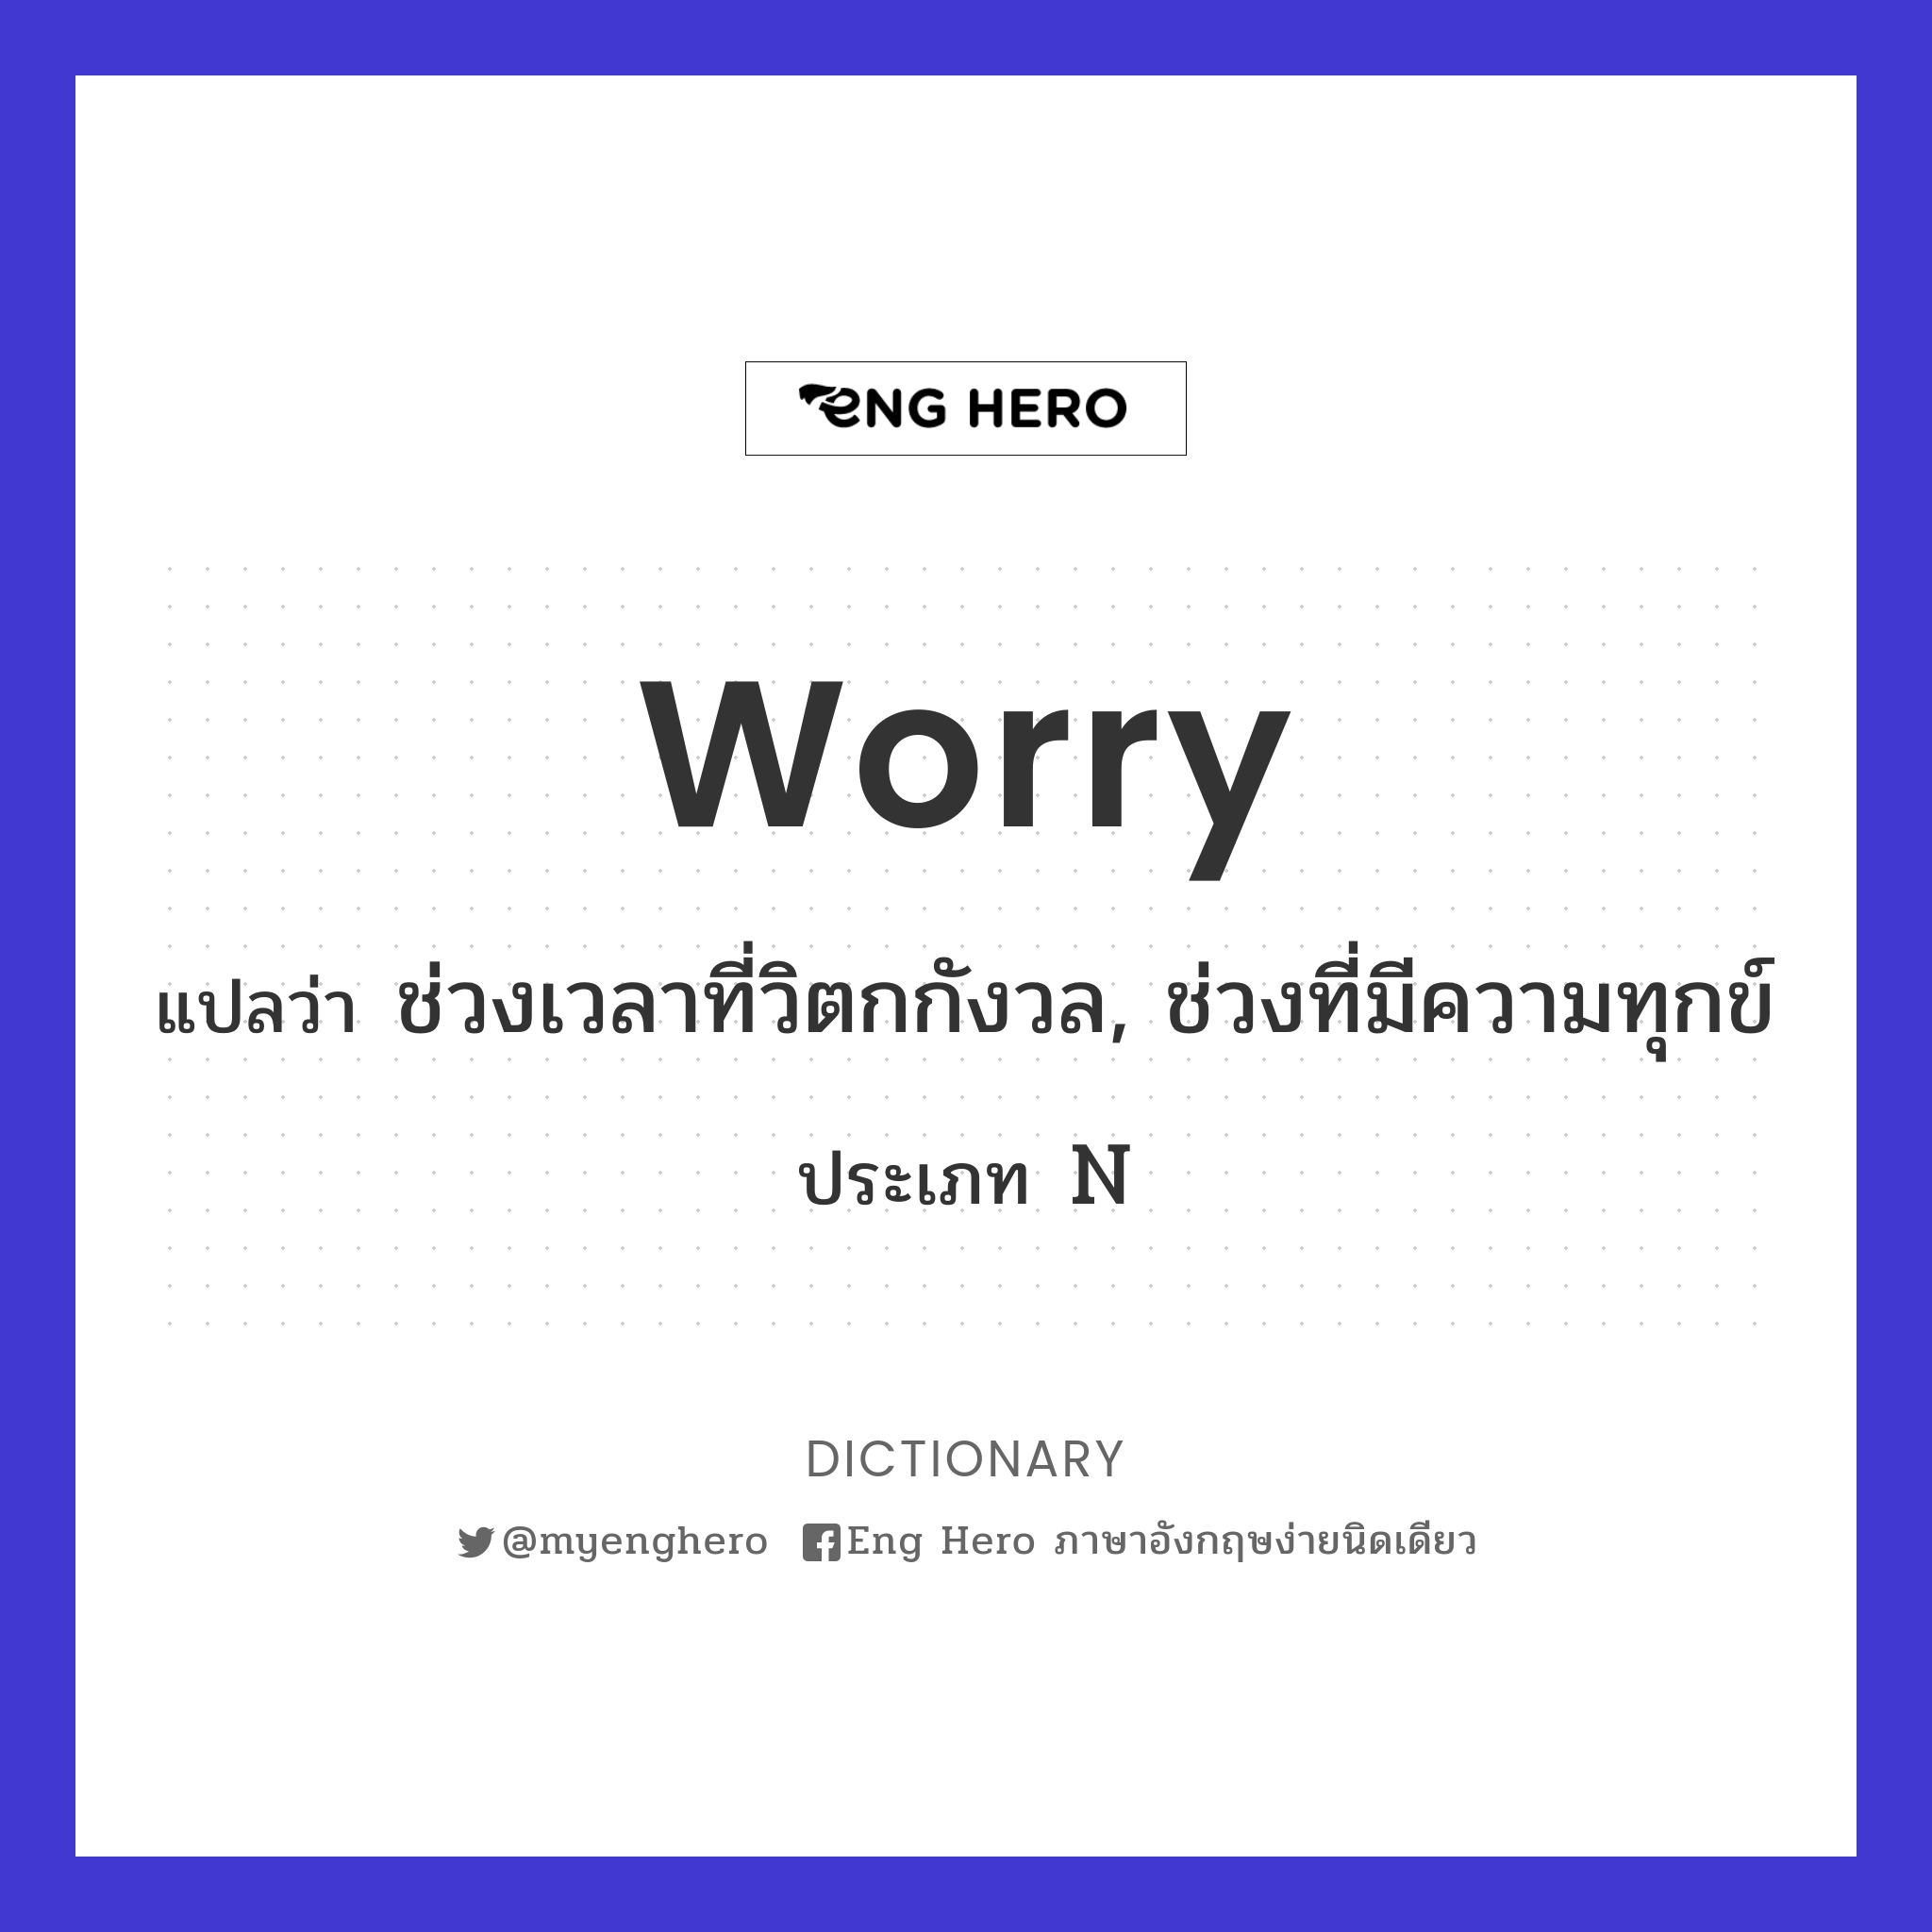 worry